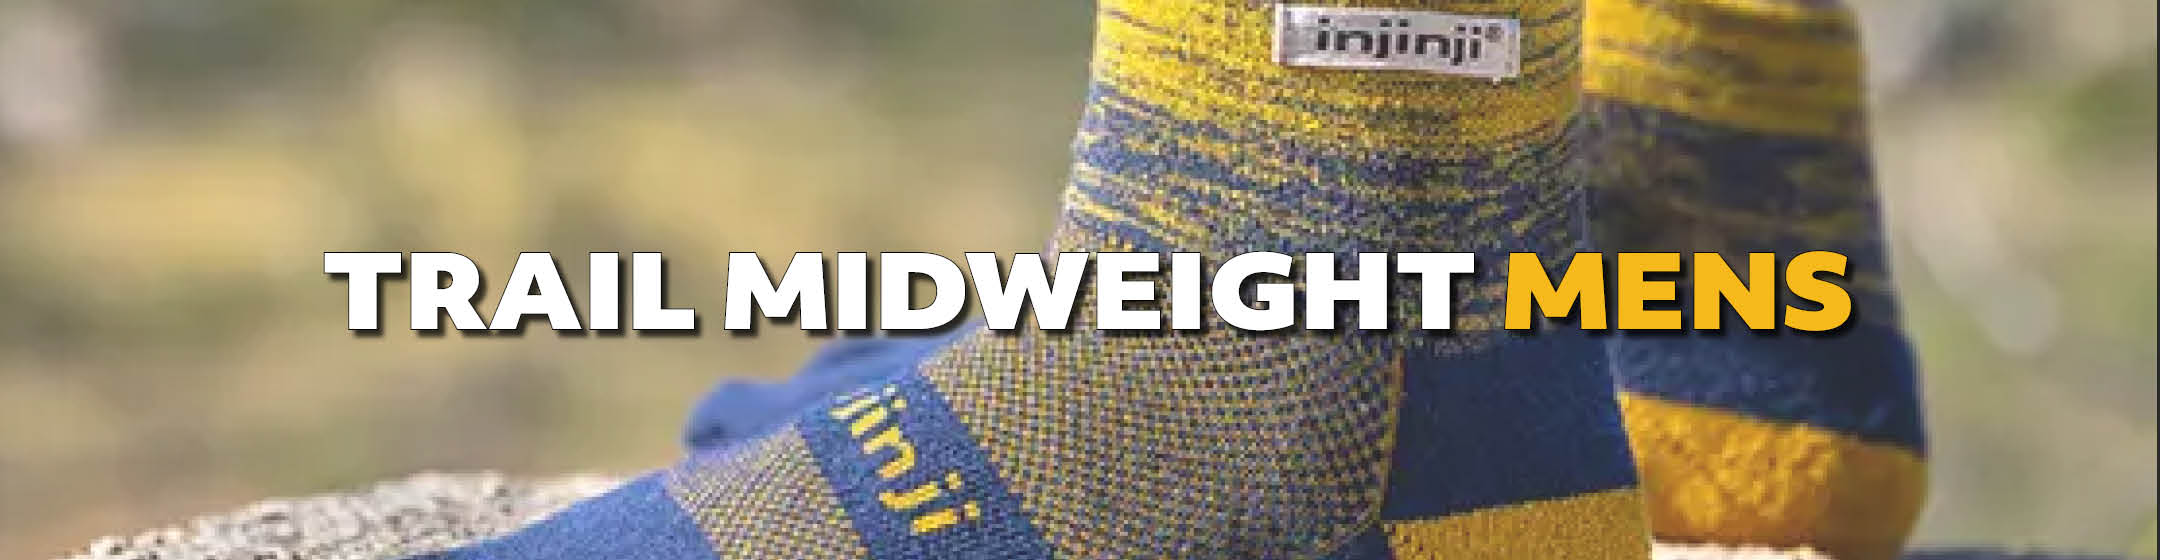 Injinji Trail Midweight Crew Socks